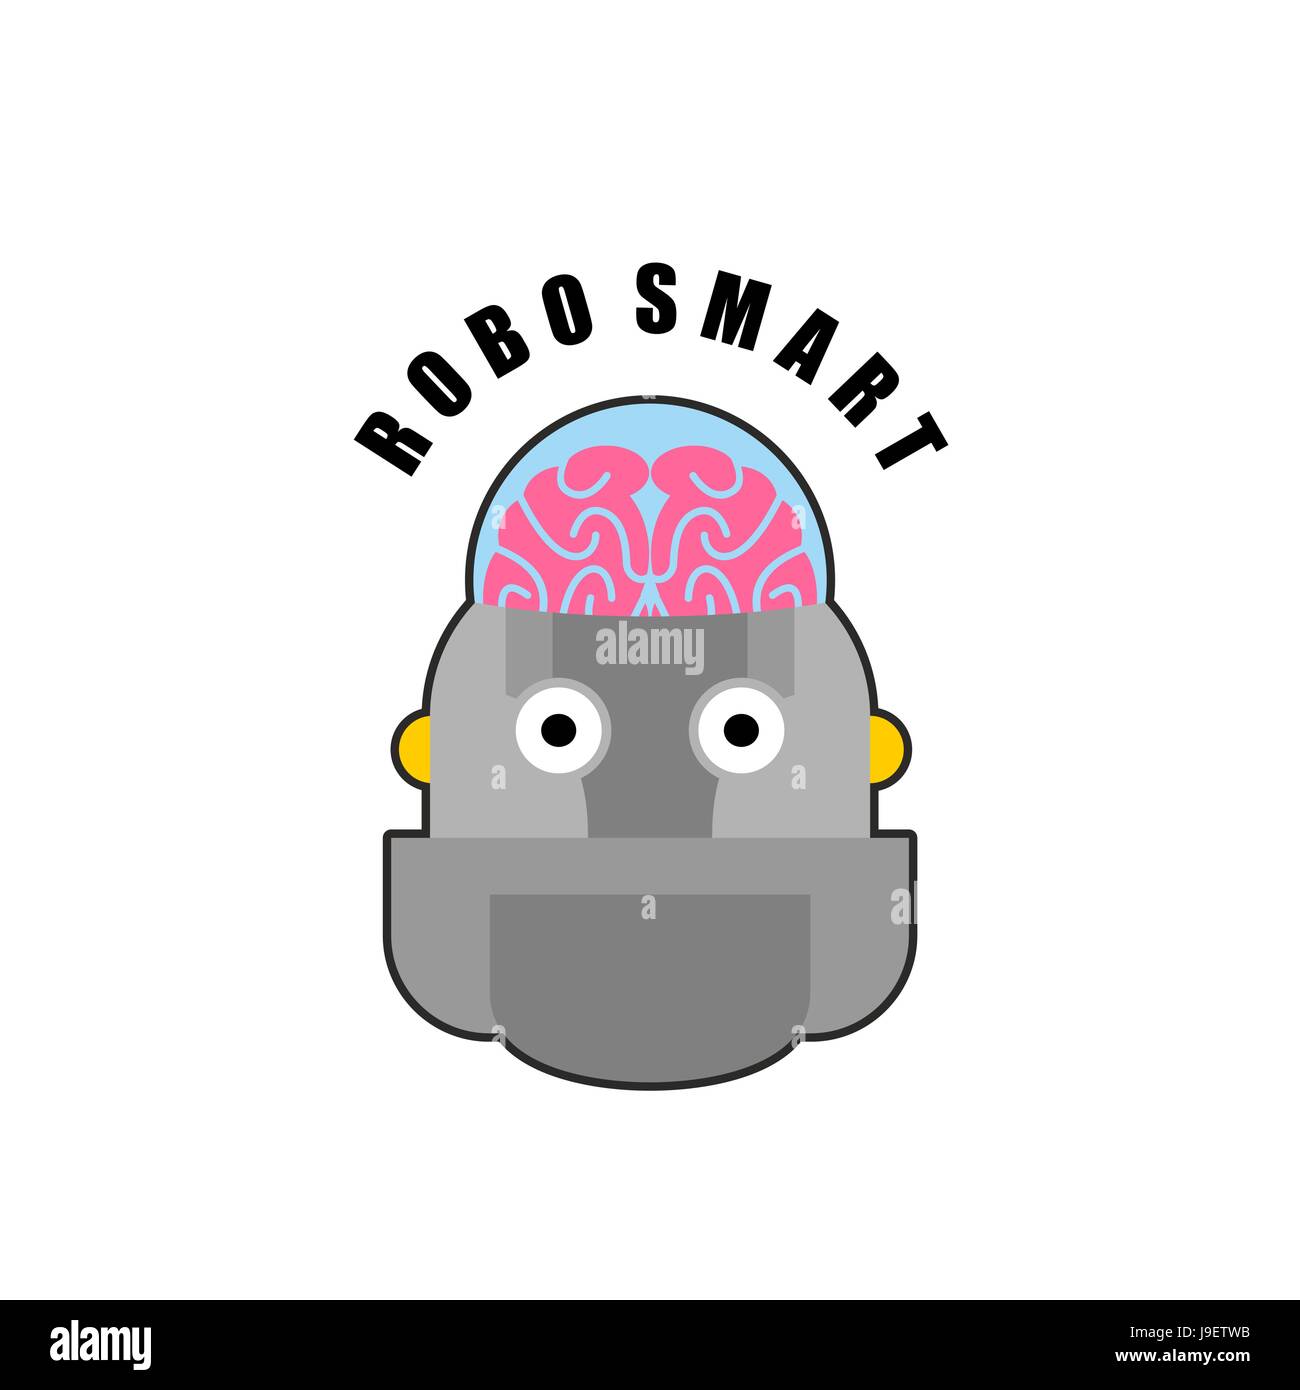 Intelligente Roboter. Emblem der Biomechanik des menschlichen Gehirns. Logo für intellektuelle anthropomorphe Maschinen der Zukunft. Künstliche Intelligenz. Stock Vektor